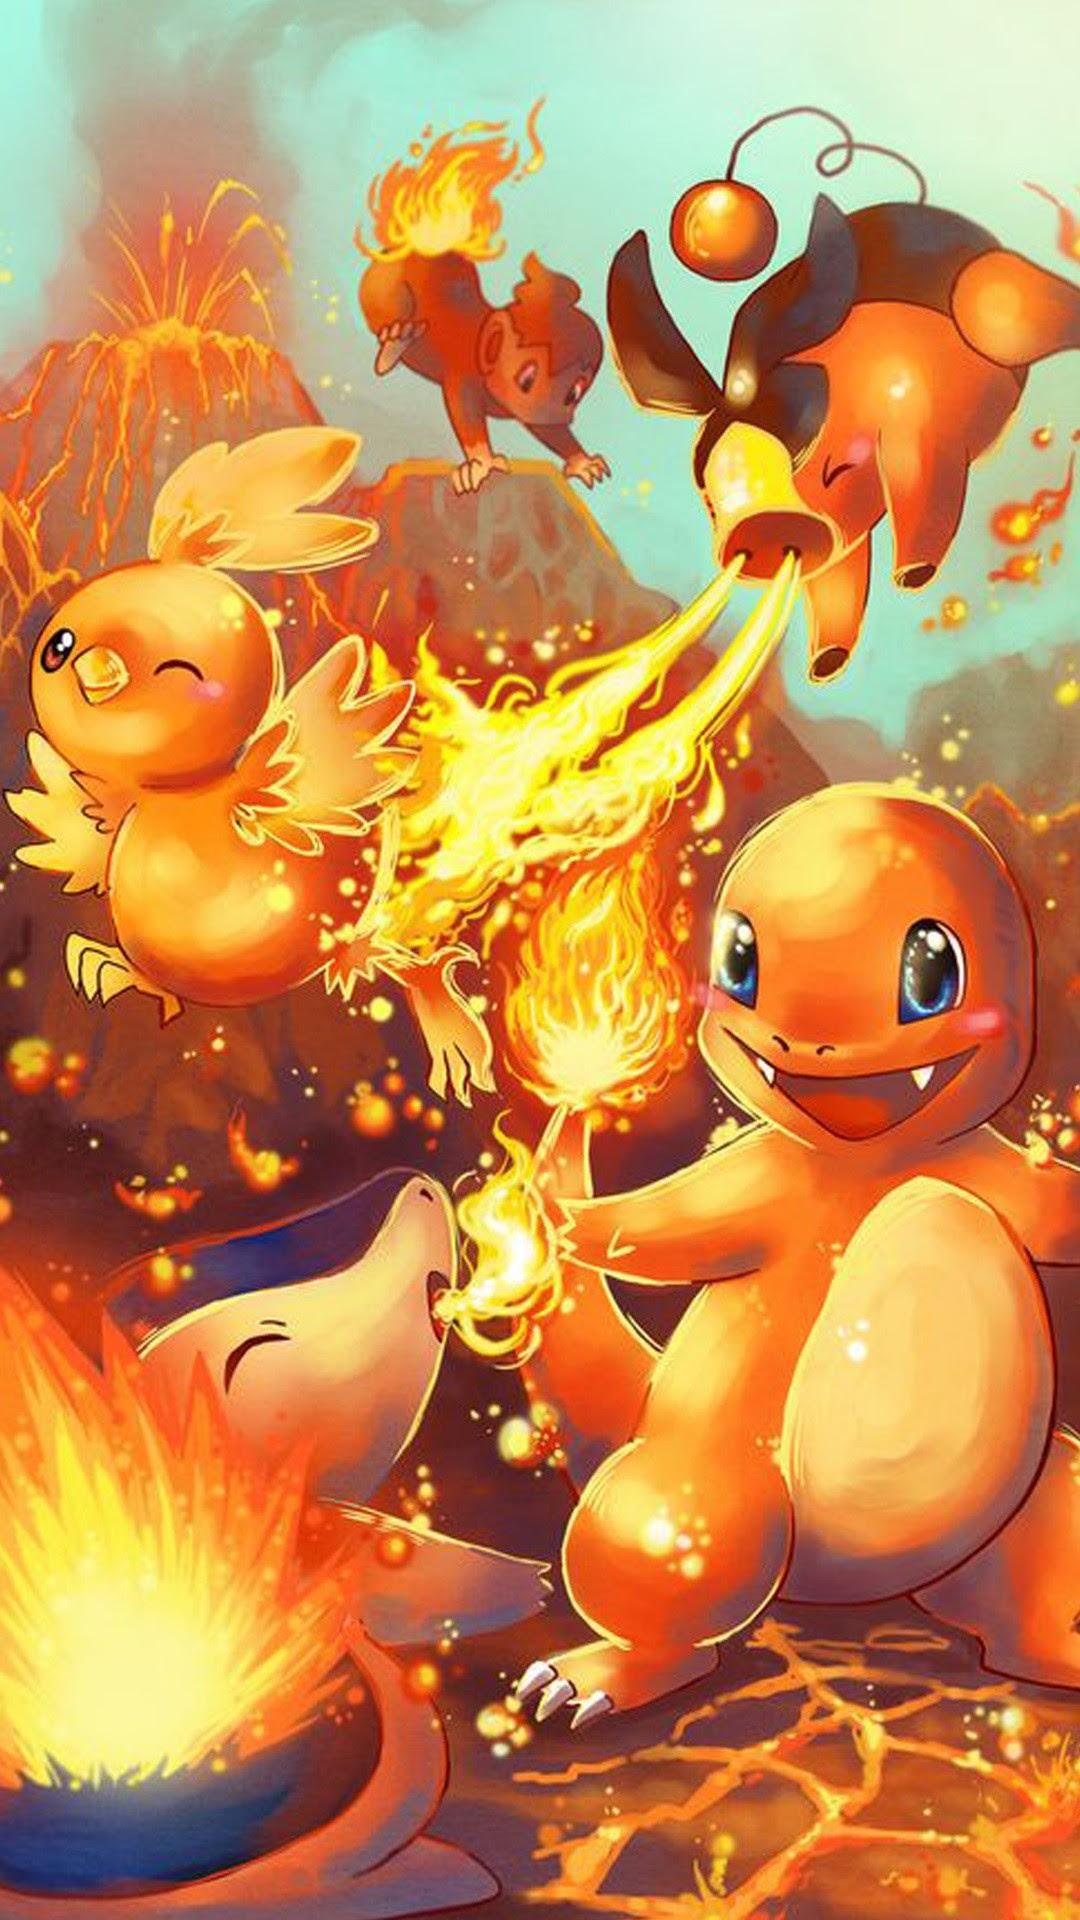 1080 x 1920 · jpeg - Fire Pokemon Hd Wallpaper - Hachiman Wallpaper